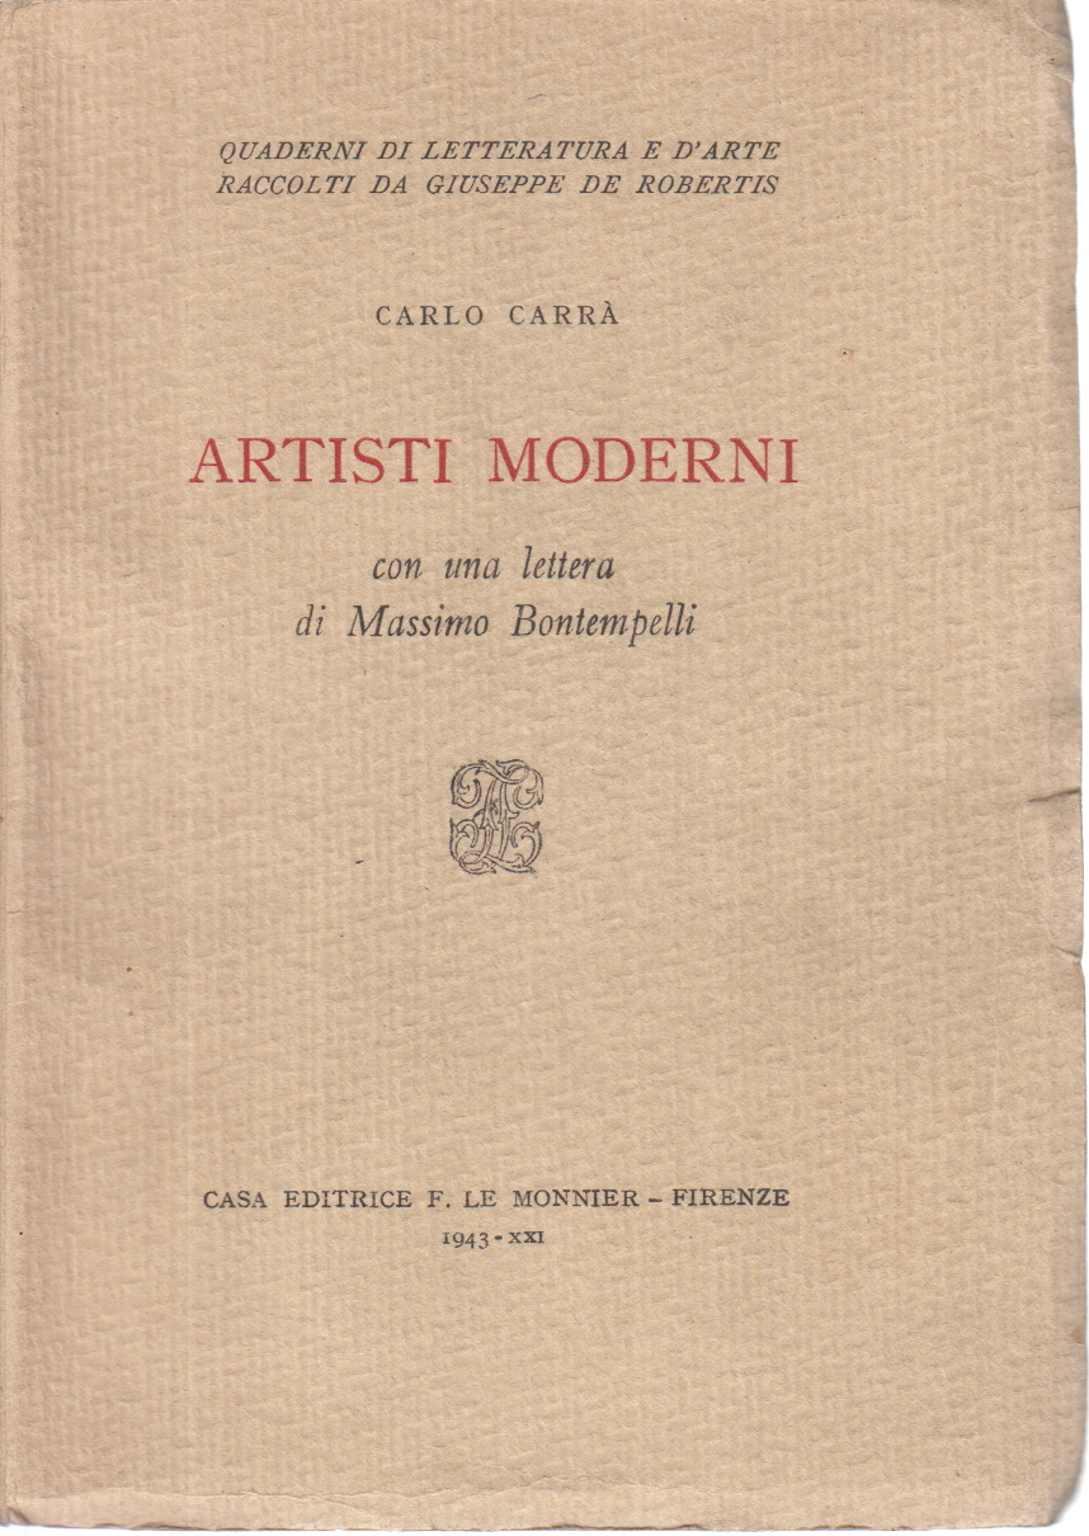 Artisti moderni, Carlo Carrà